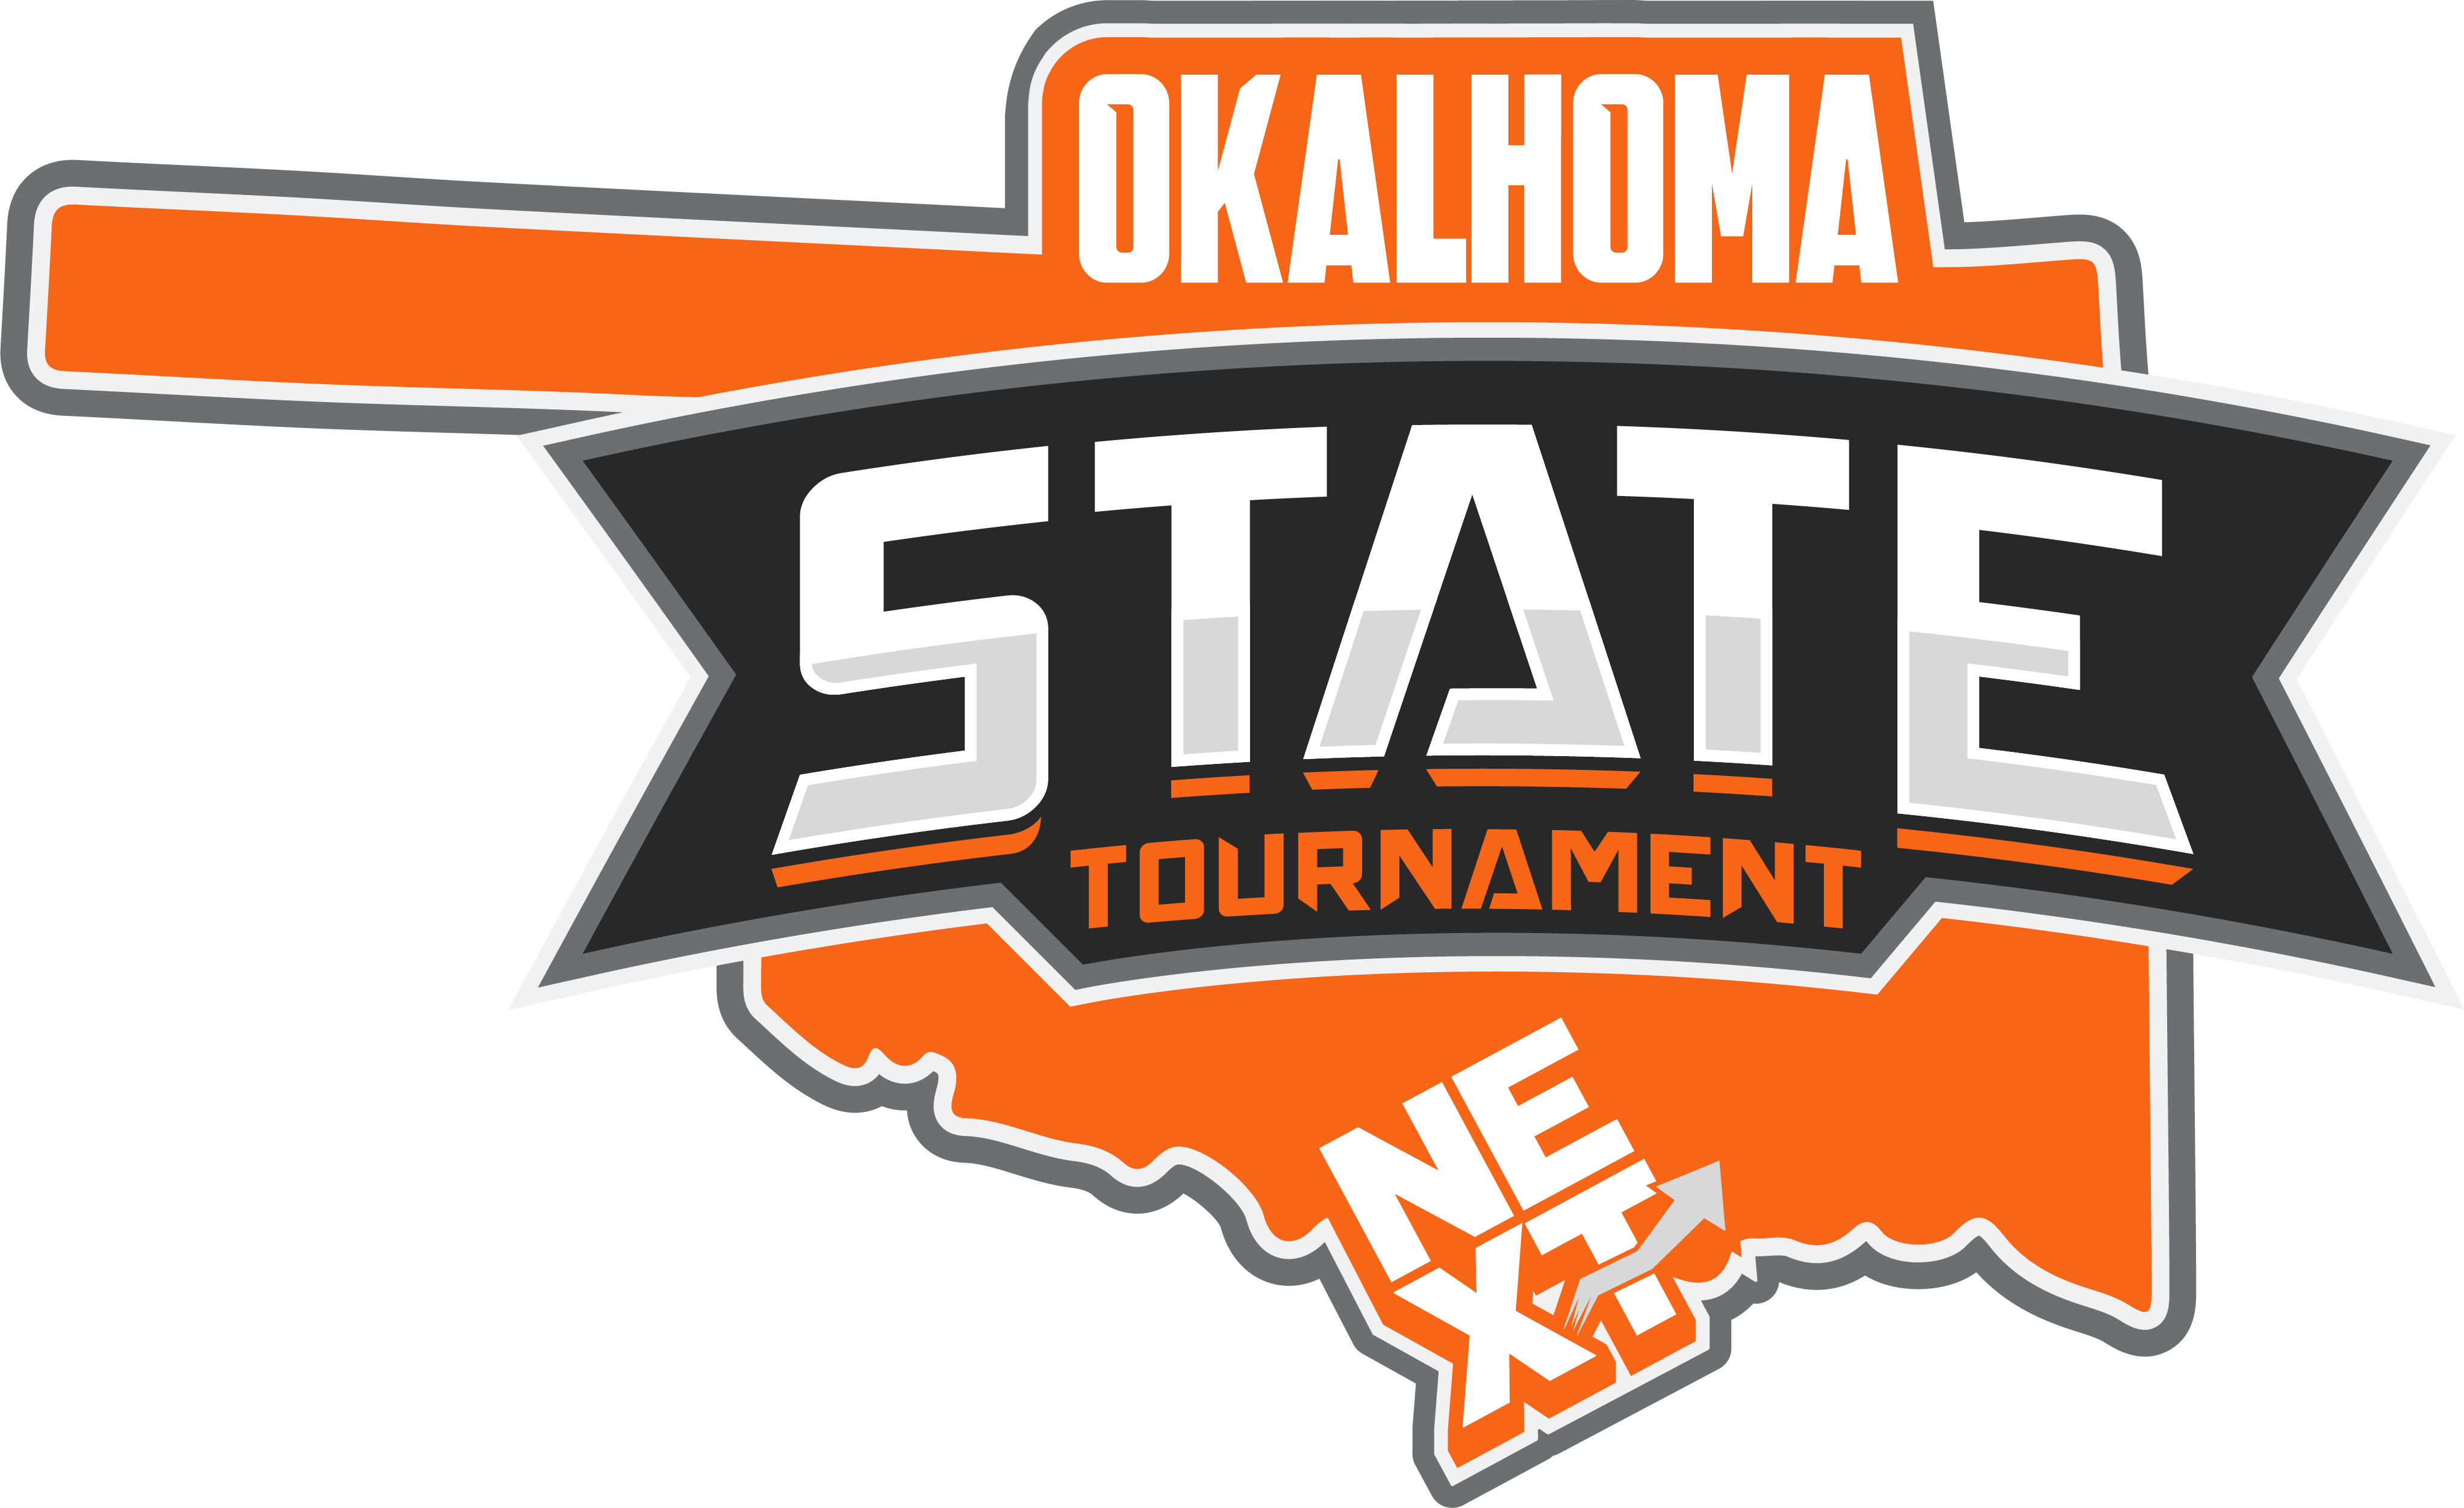 Oklahoma State Tournament